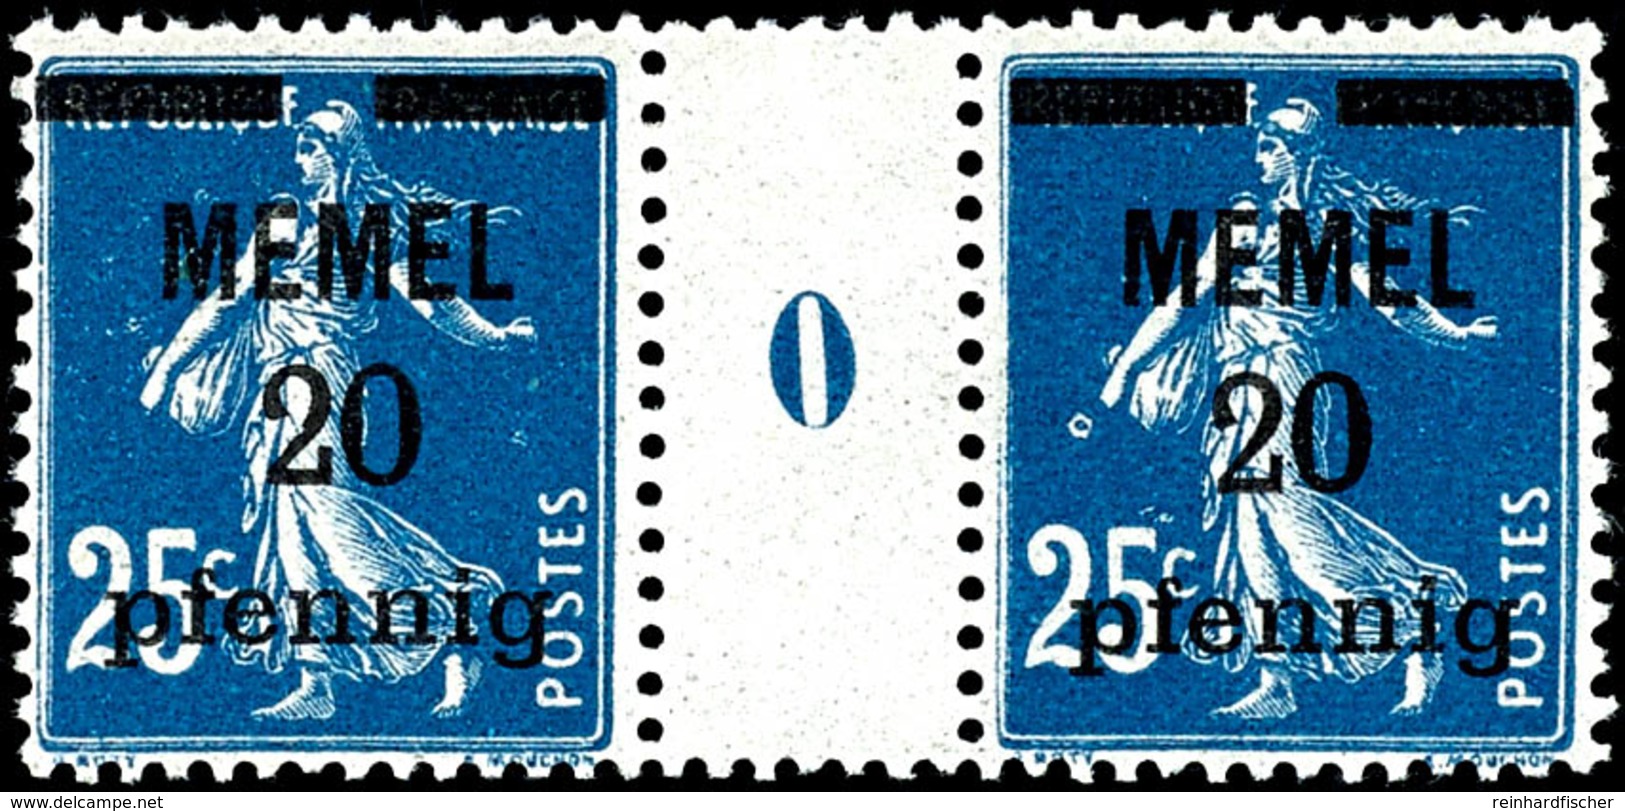 20 Pf A. 25 C. Säerin A-Farbe, Postfrisches Zwischenstegpaar Mit Ms "0", Gepr. Nagler VP, Mi. 160.-, Katalog: 20aMs0 ** - Memelland 1923